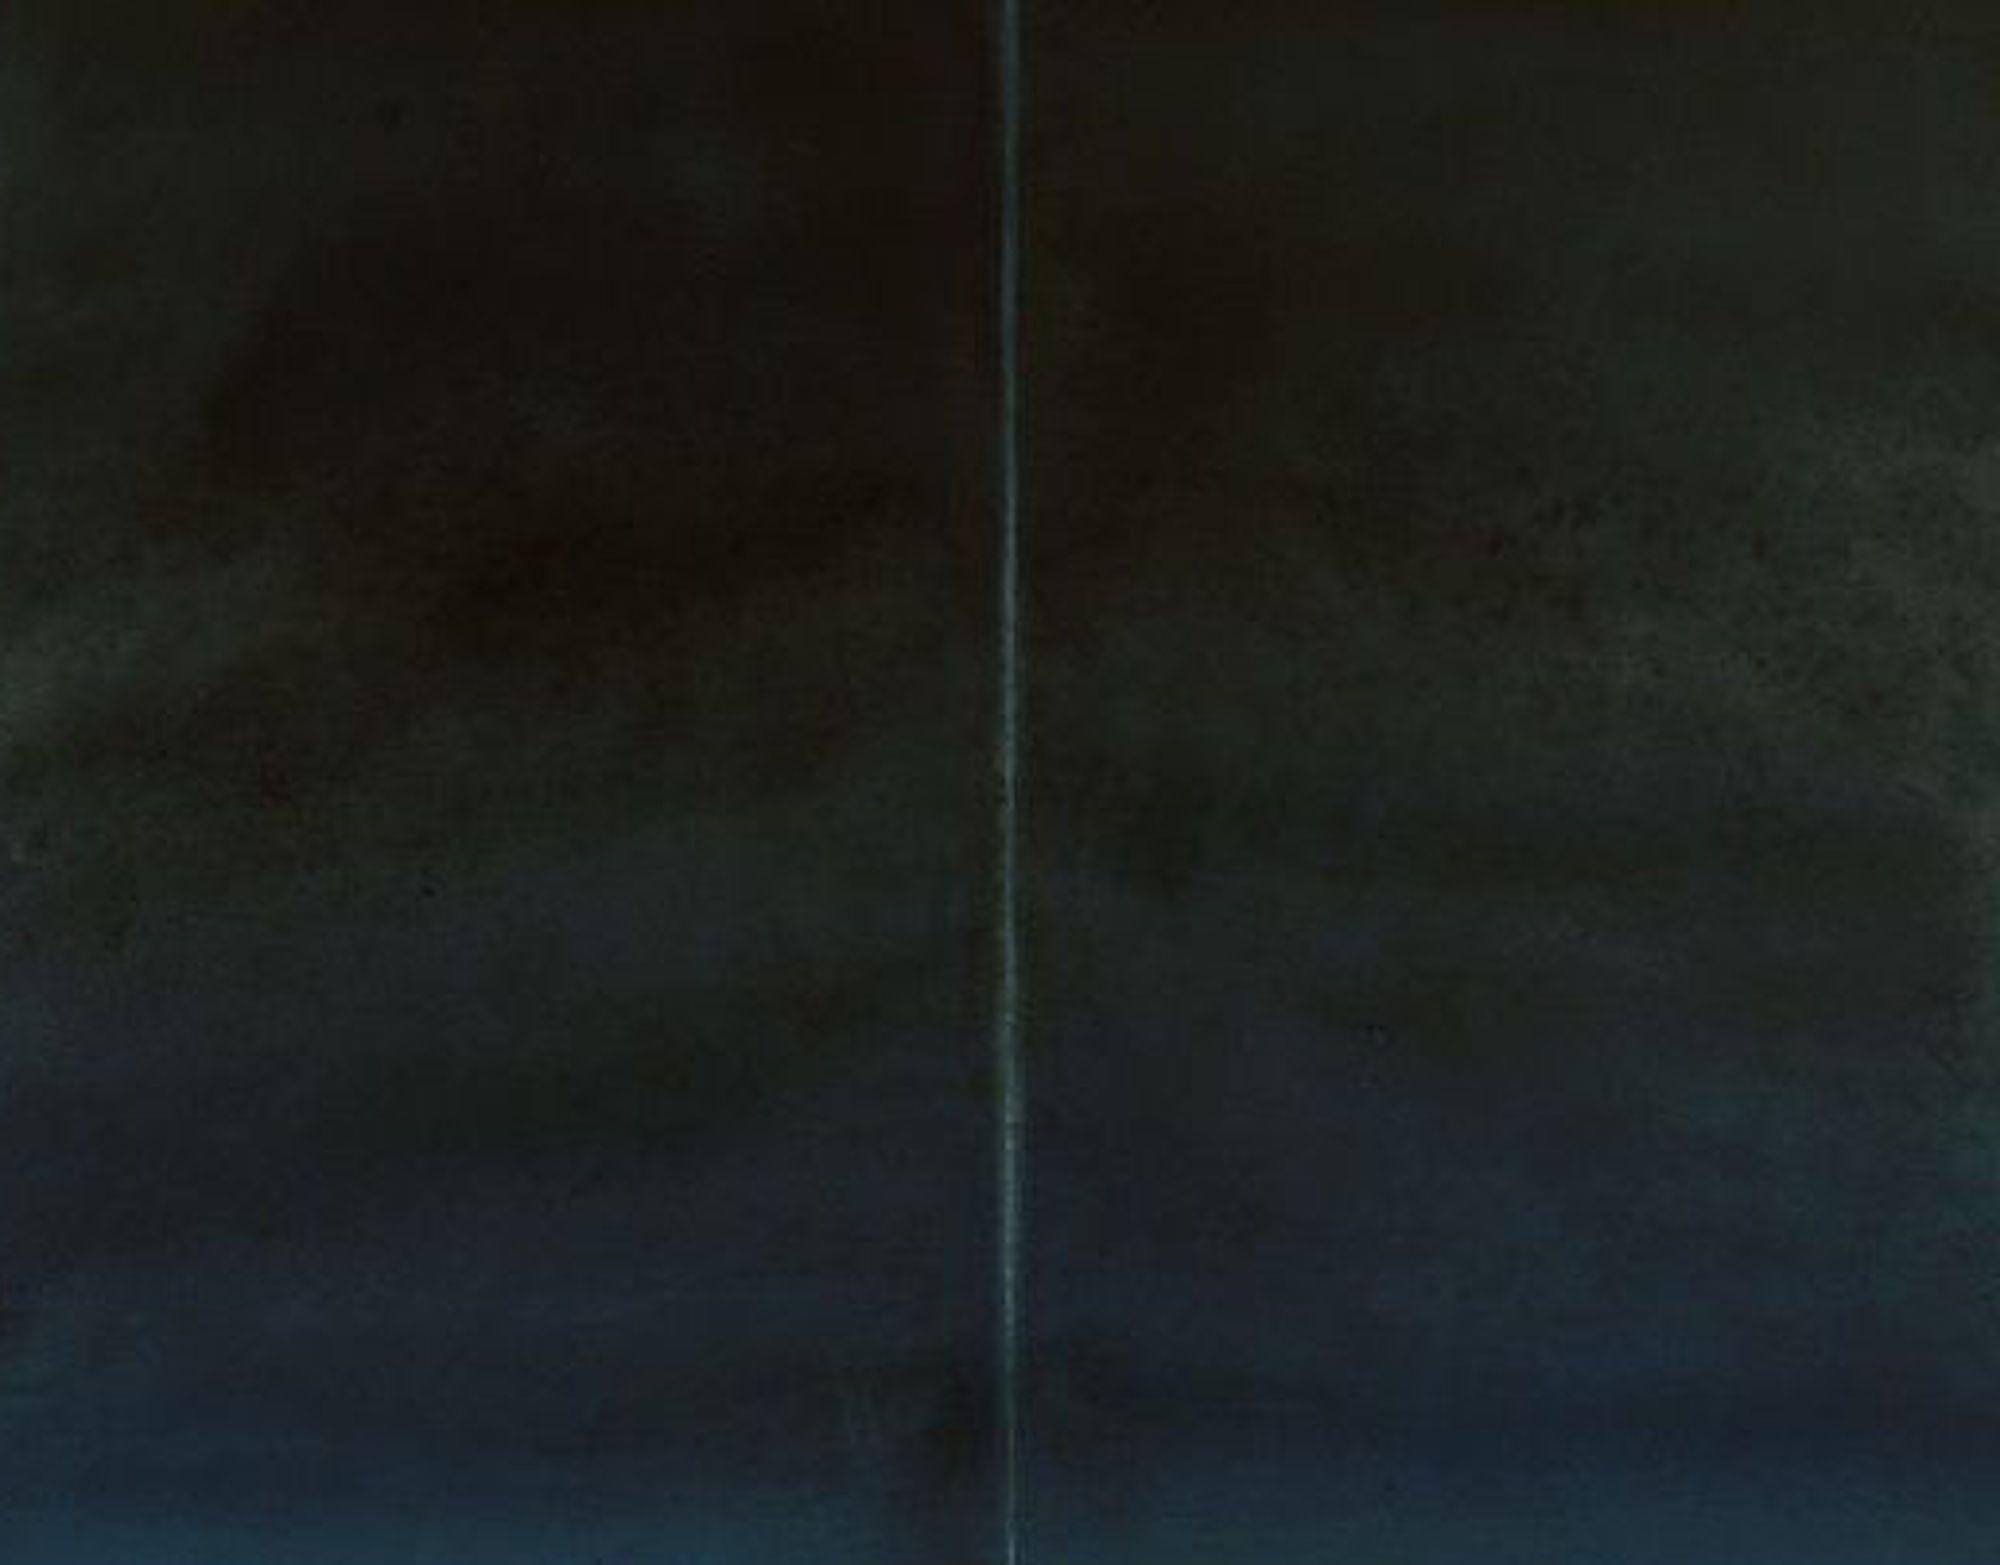 Untitled XLII von Ferle - Großes abstraktes Gemälde, Grau und Schwarz, dunkle Töne (Abstrakt), Painting, von Elvire Ferle